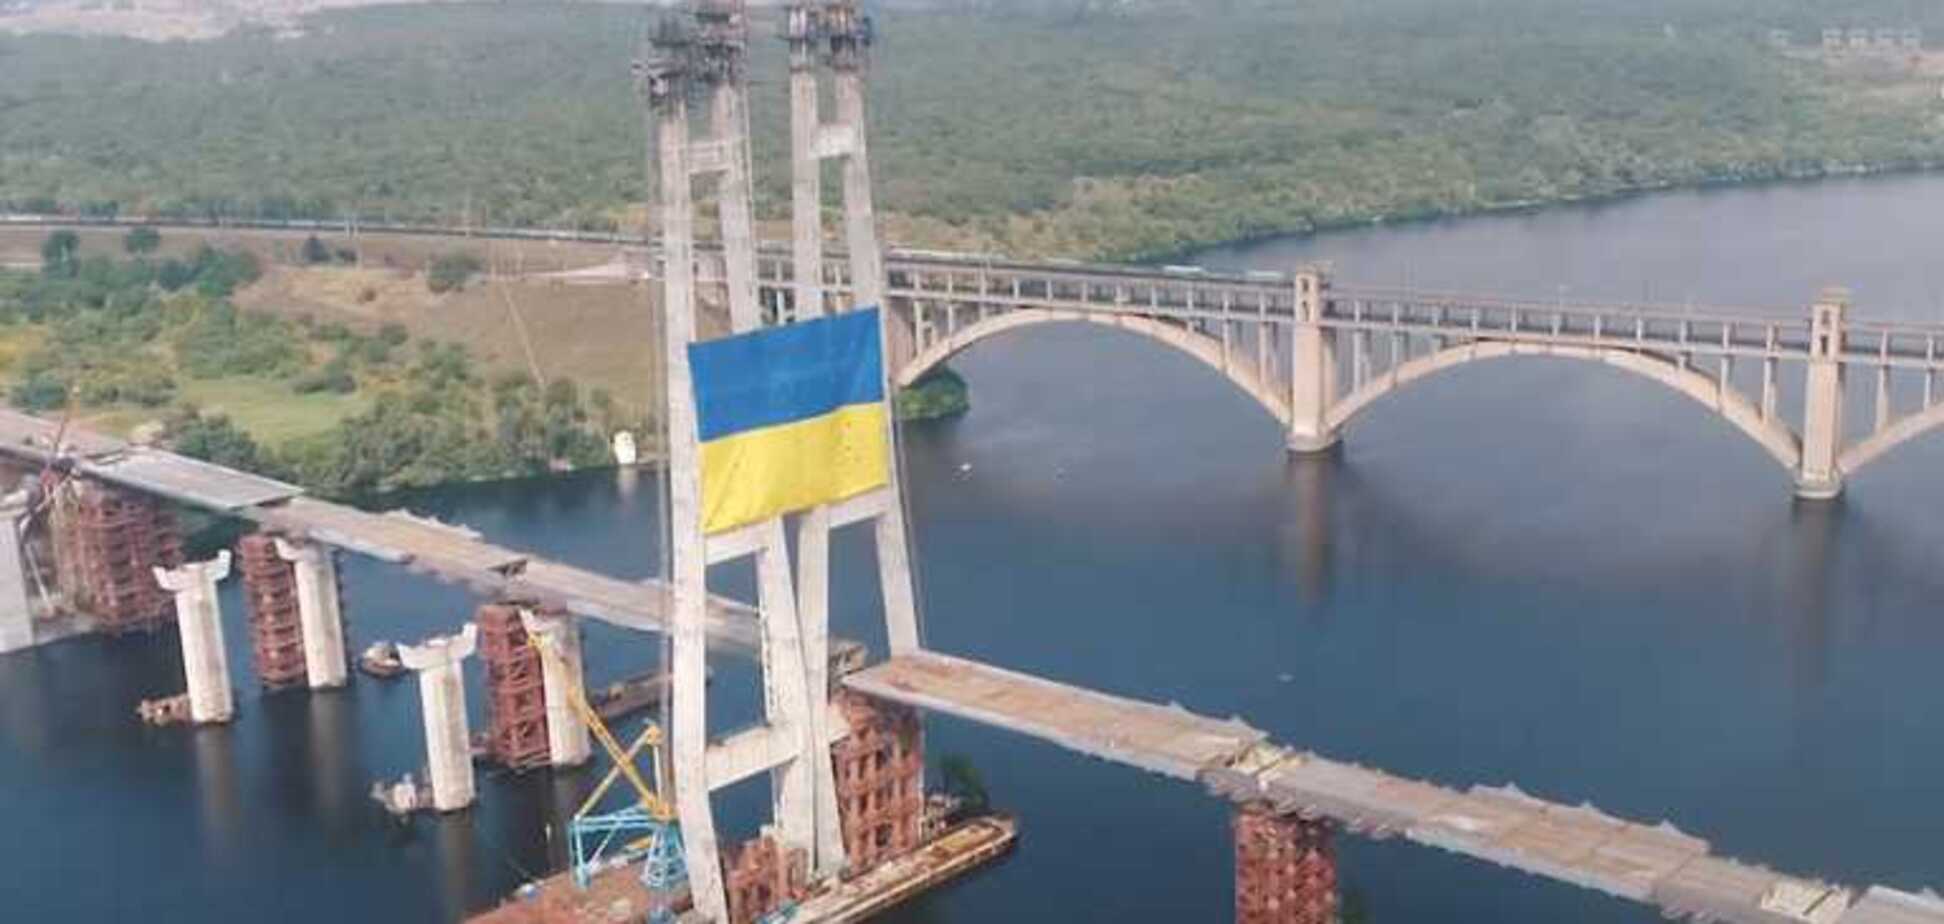 'Запорожсталь' установила национальный флаг Украины на самой высокой точке над Днепром